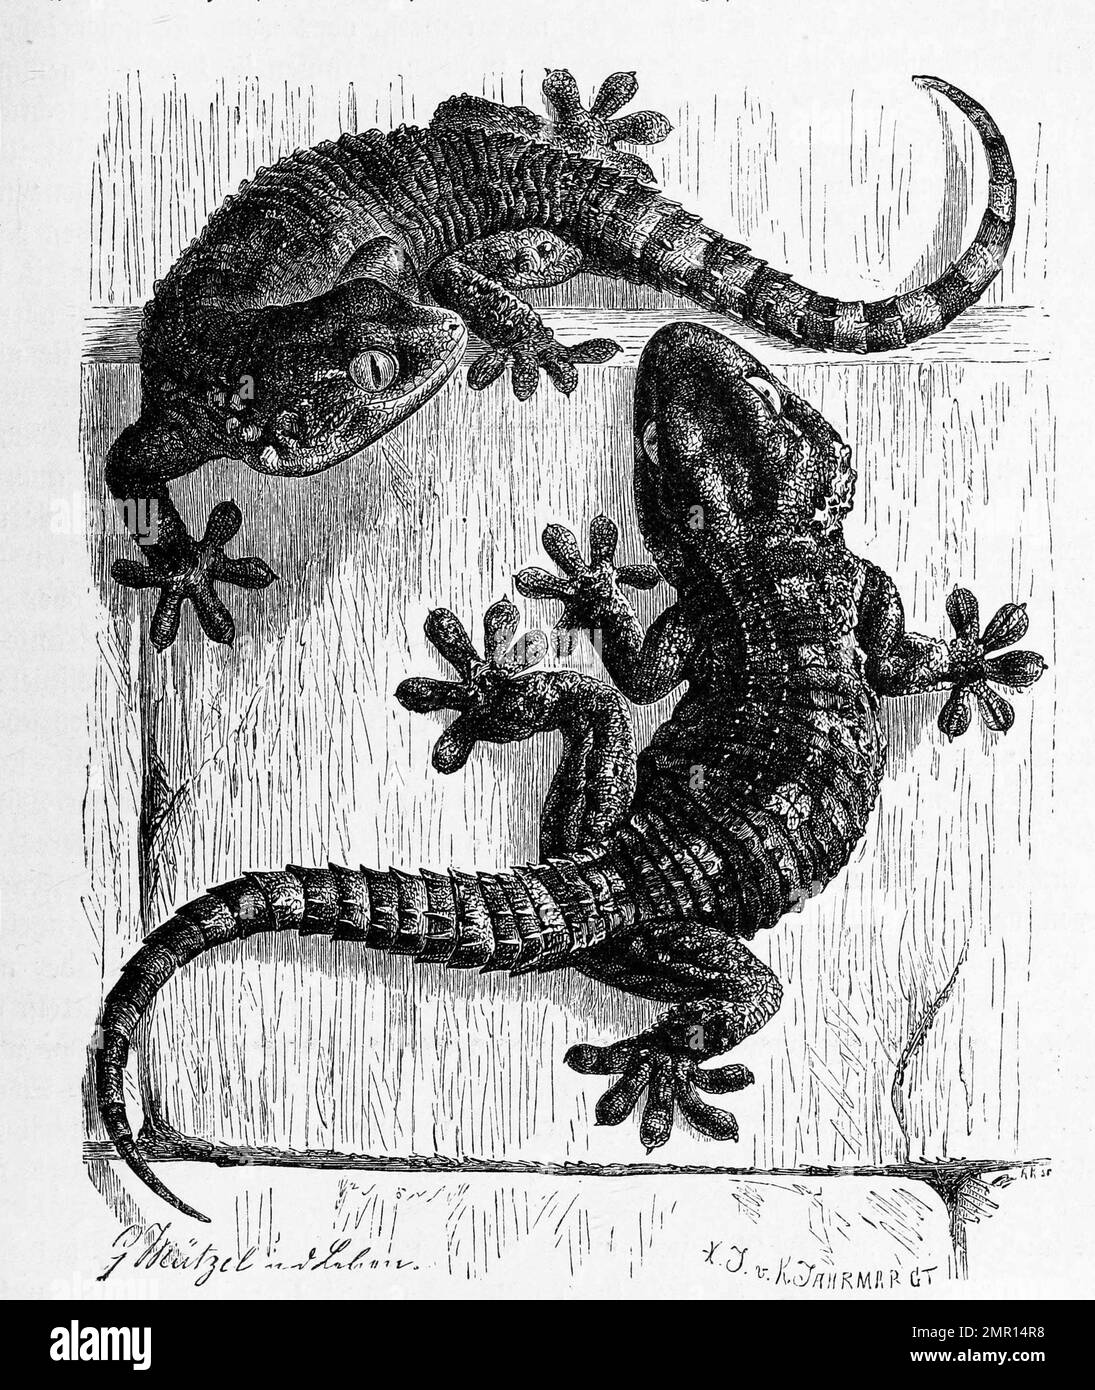 Mauergecko, Tarentola mauritanica, ein häufiger und im Mittelmeerraum großflächig verbreiteter, nachtaktiver Gecko, Historisch, digital restaurierte Reproduktion von einer Vorlage aus dem 19. Jahrhundert Banque D'Images